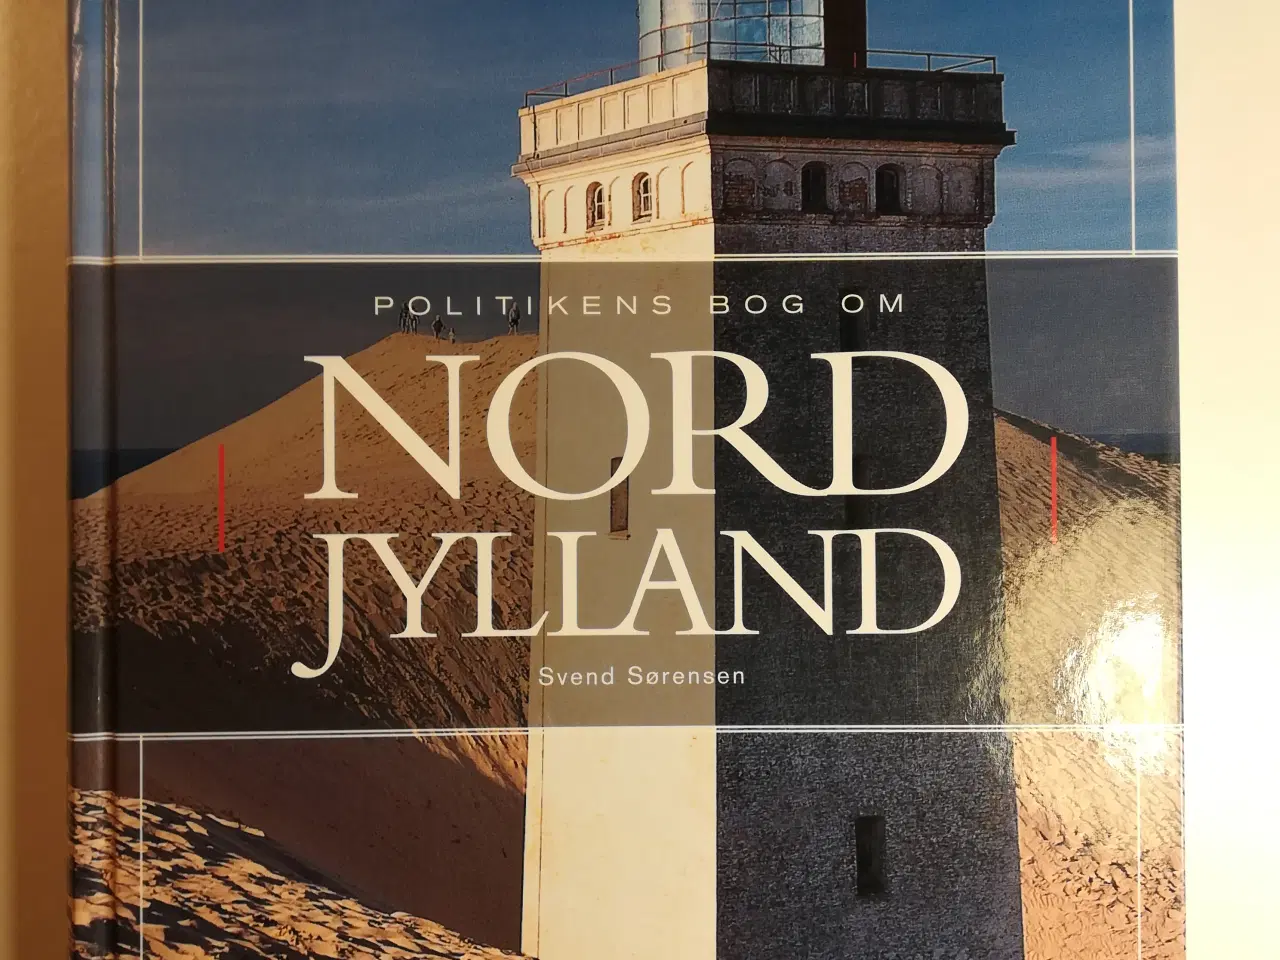 Billede 1 - Politikens bog om Nordjylland, af Svend Sørensen  